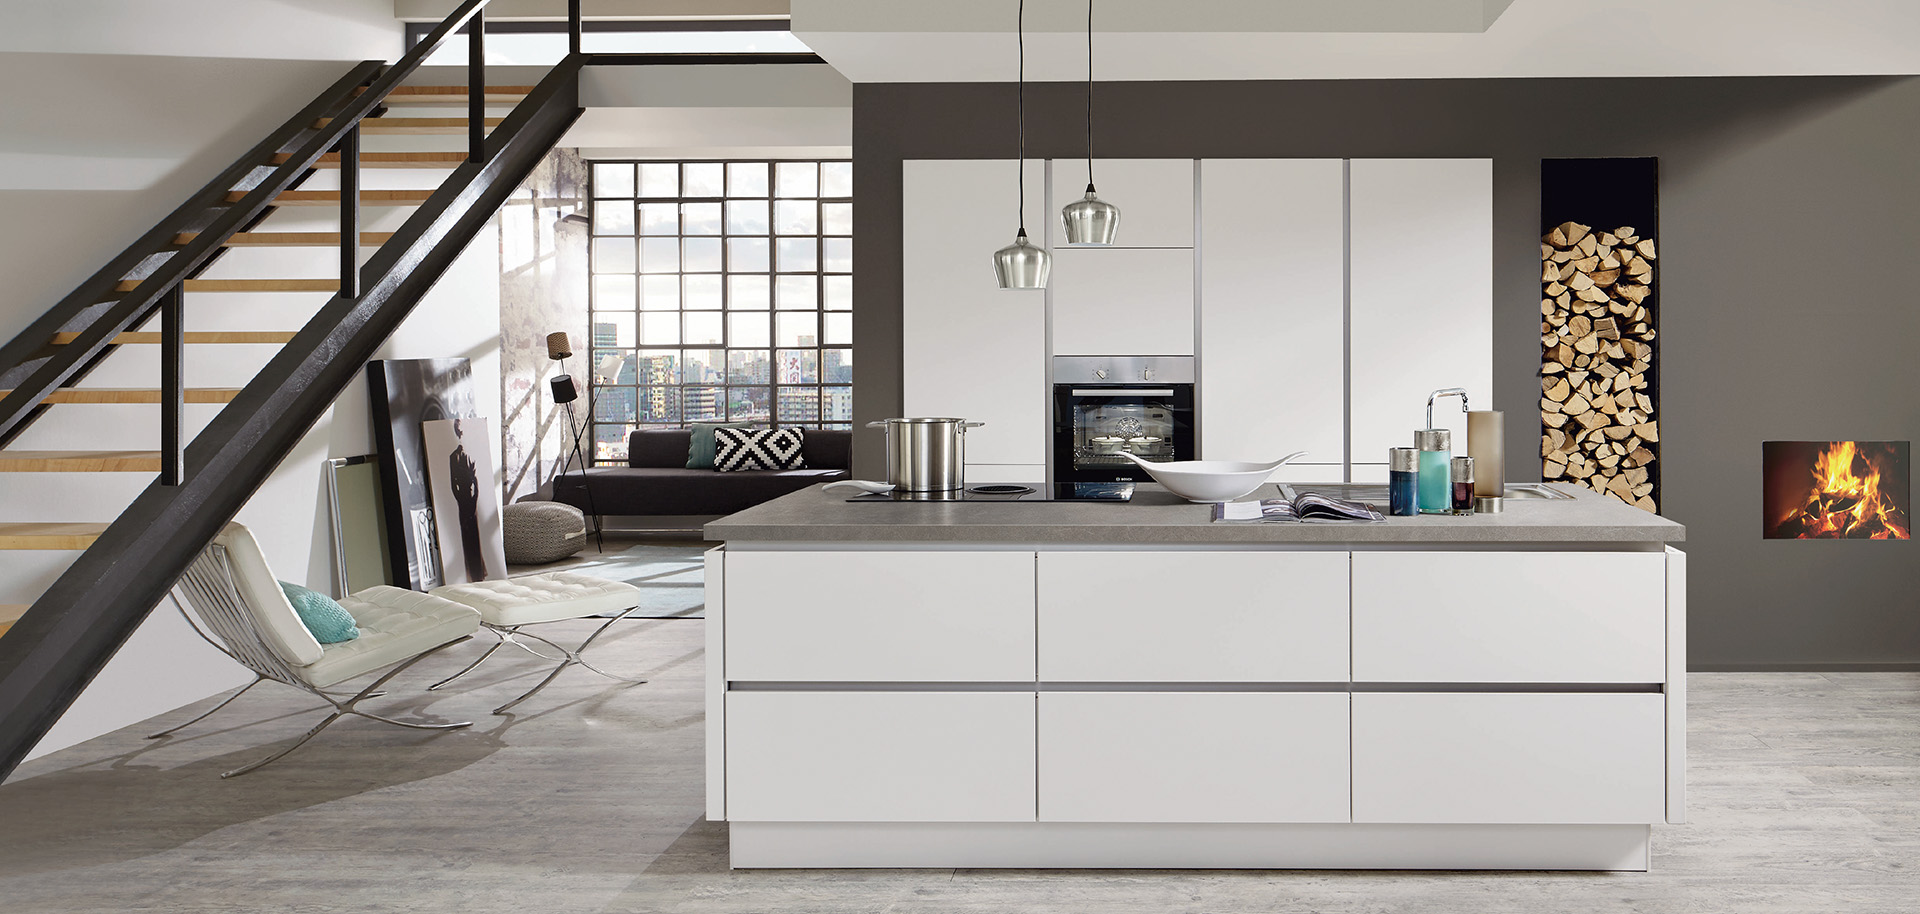 Interni di cucina moderna con linee pulite caratterizzati da mobili bianchi, elettrodomestici in acciaio inossidabile e un'accogliente area soggiorno adiacente con camino.